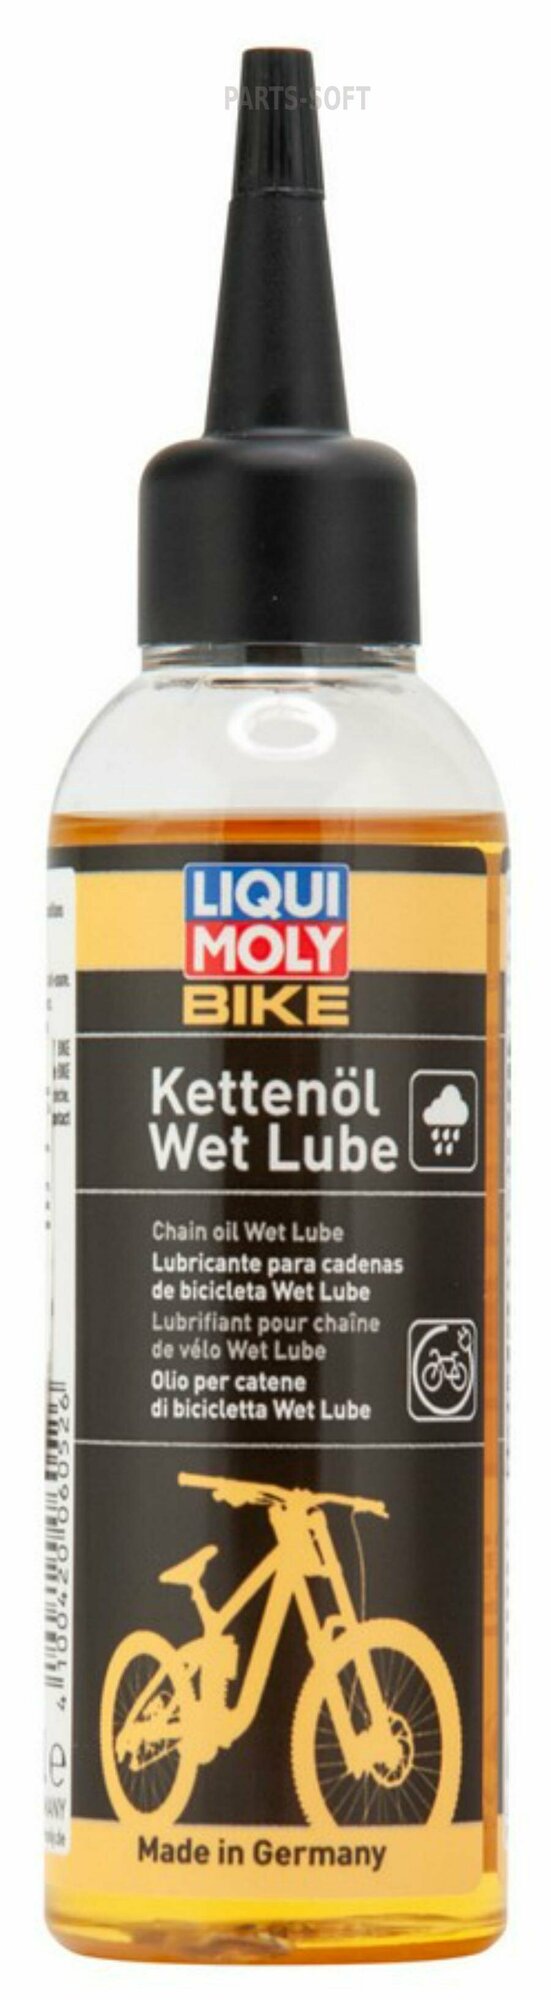 Смазка Liqui Moly Bike Kettenoil Wet Lube 0.1л (6052) - фото №2